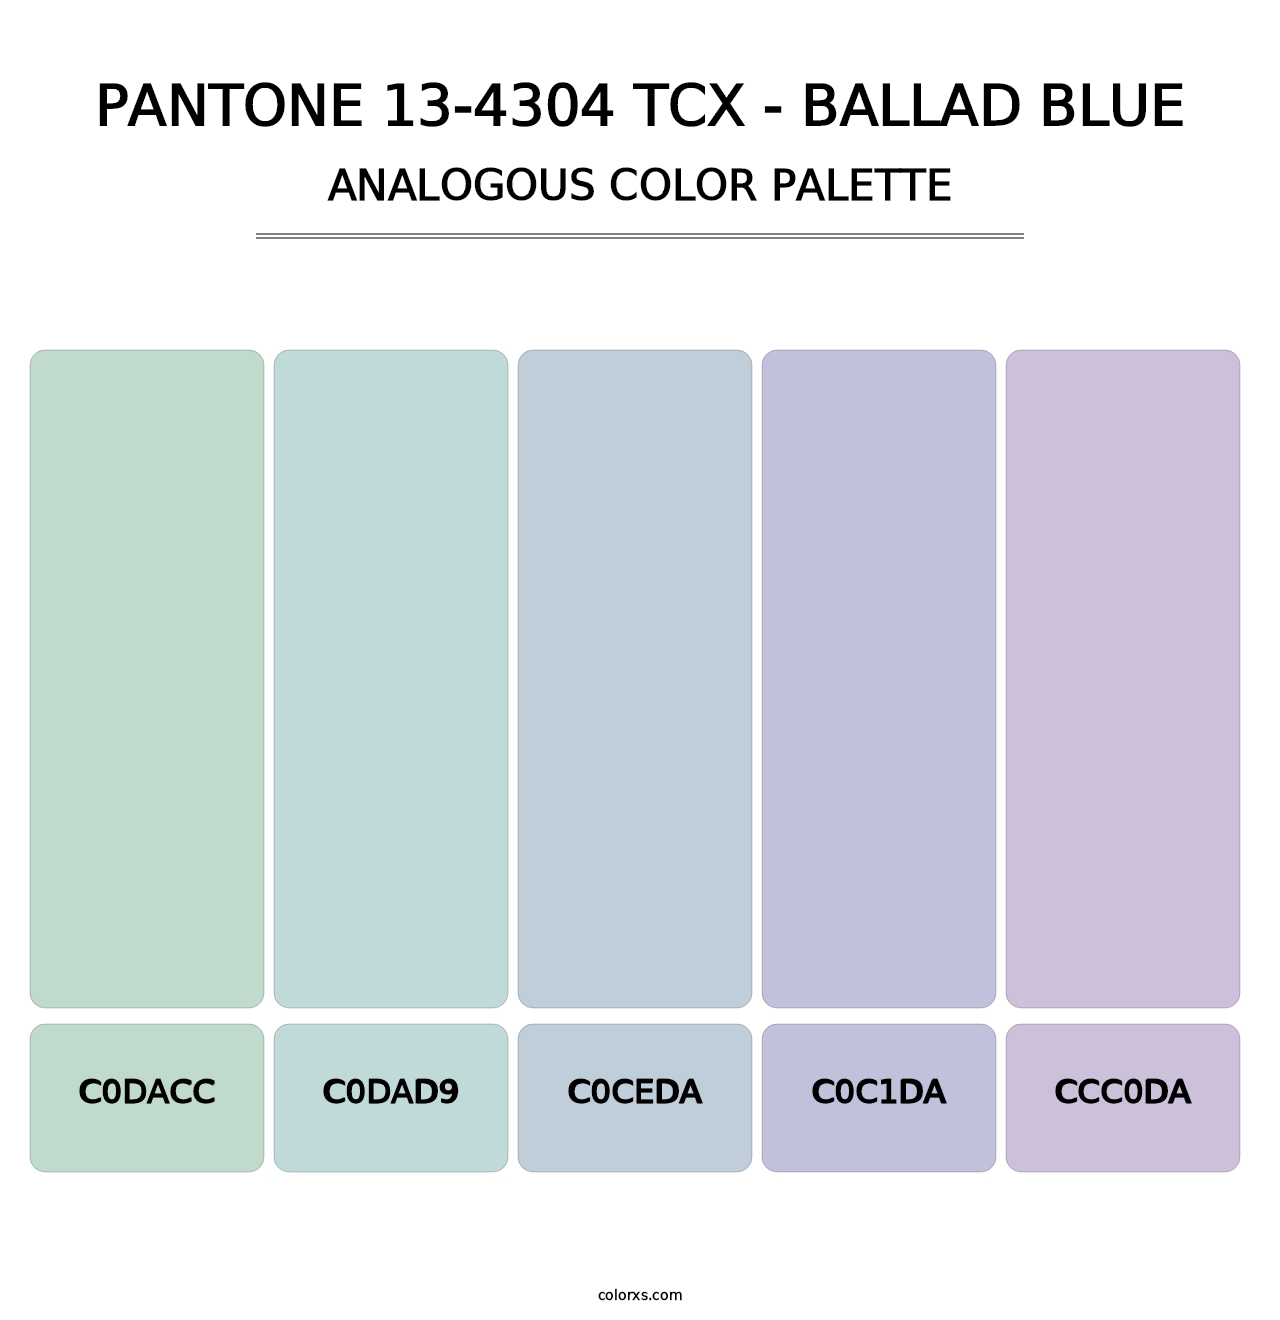 PANTONE 13-4304 TCX - Ballad Blue - Analogous Color Palette